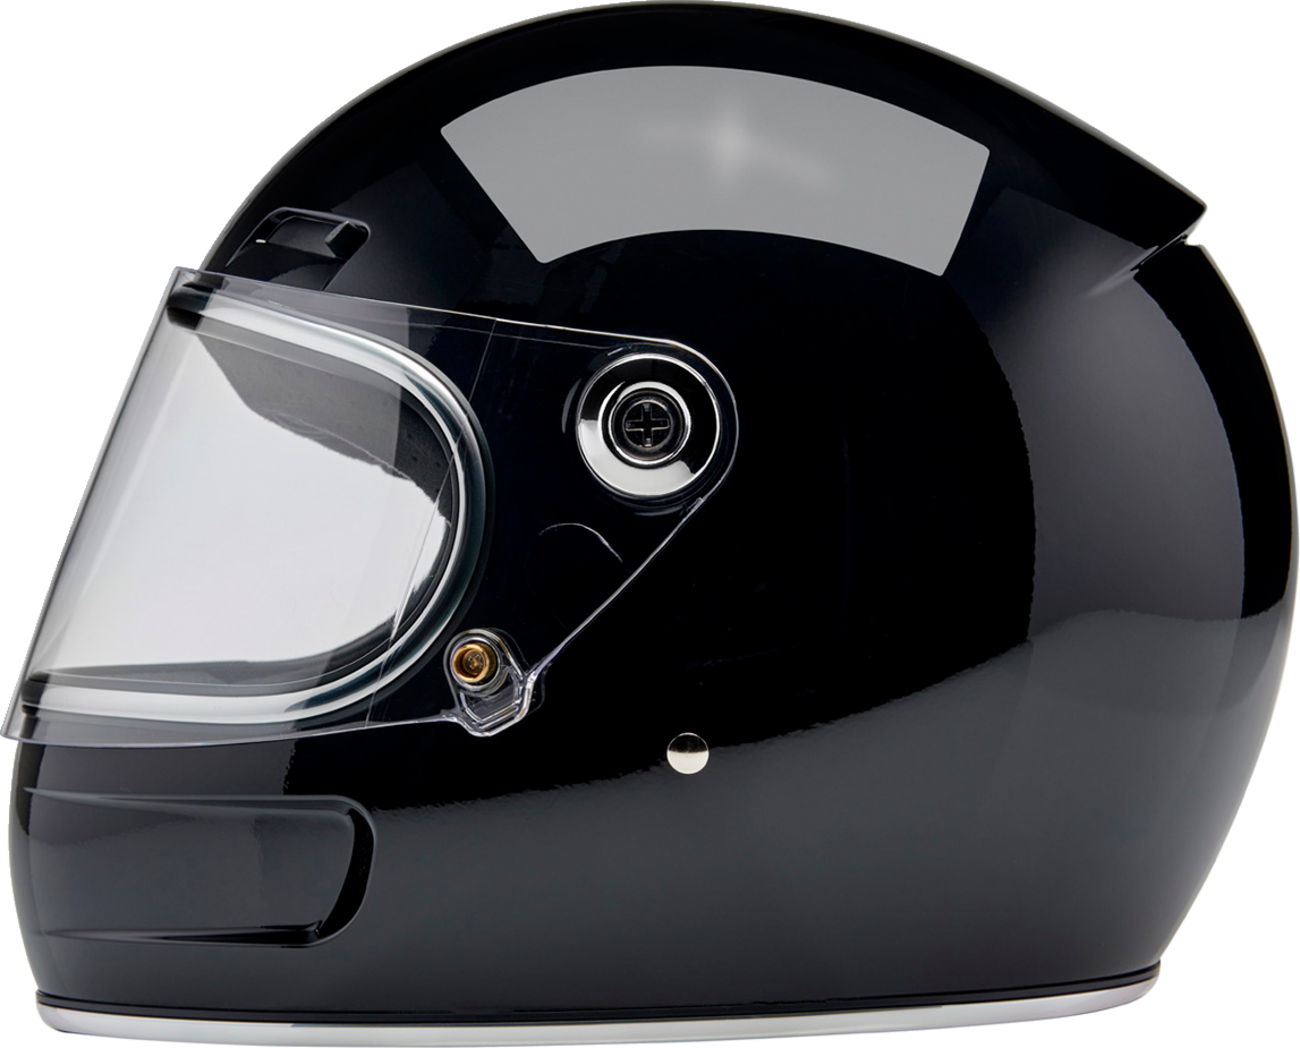 BILTWELL Gringo SV Helmet - Gloss Black - Small 1006-101-502